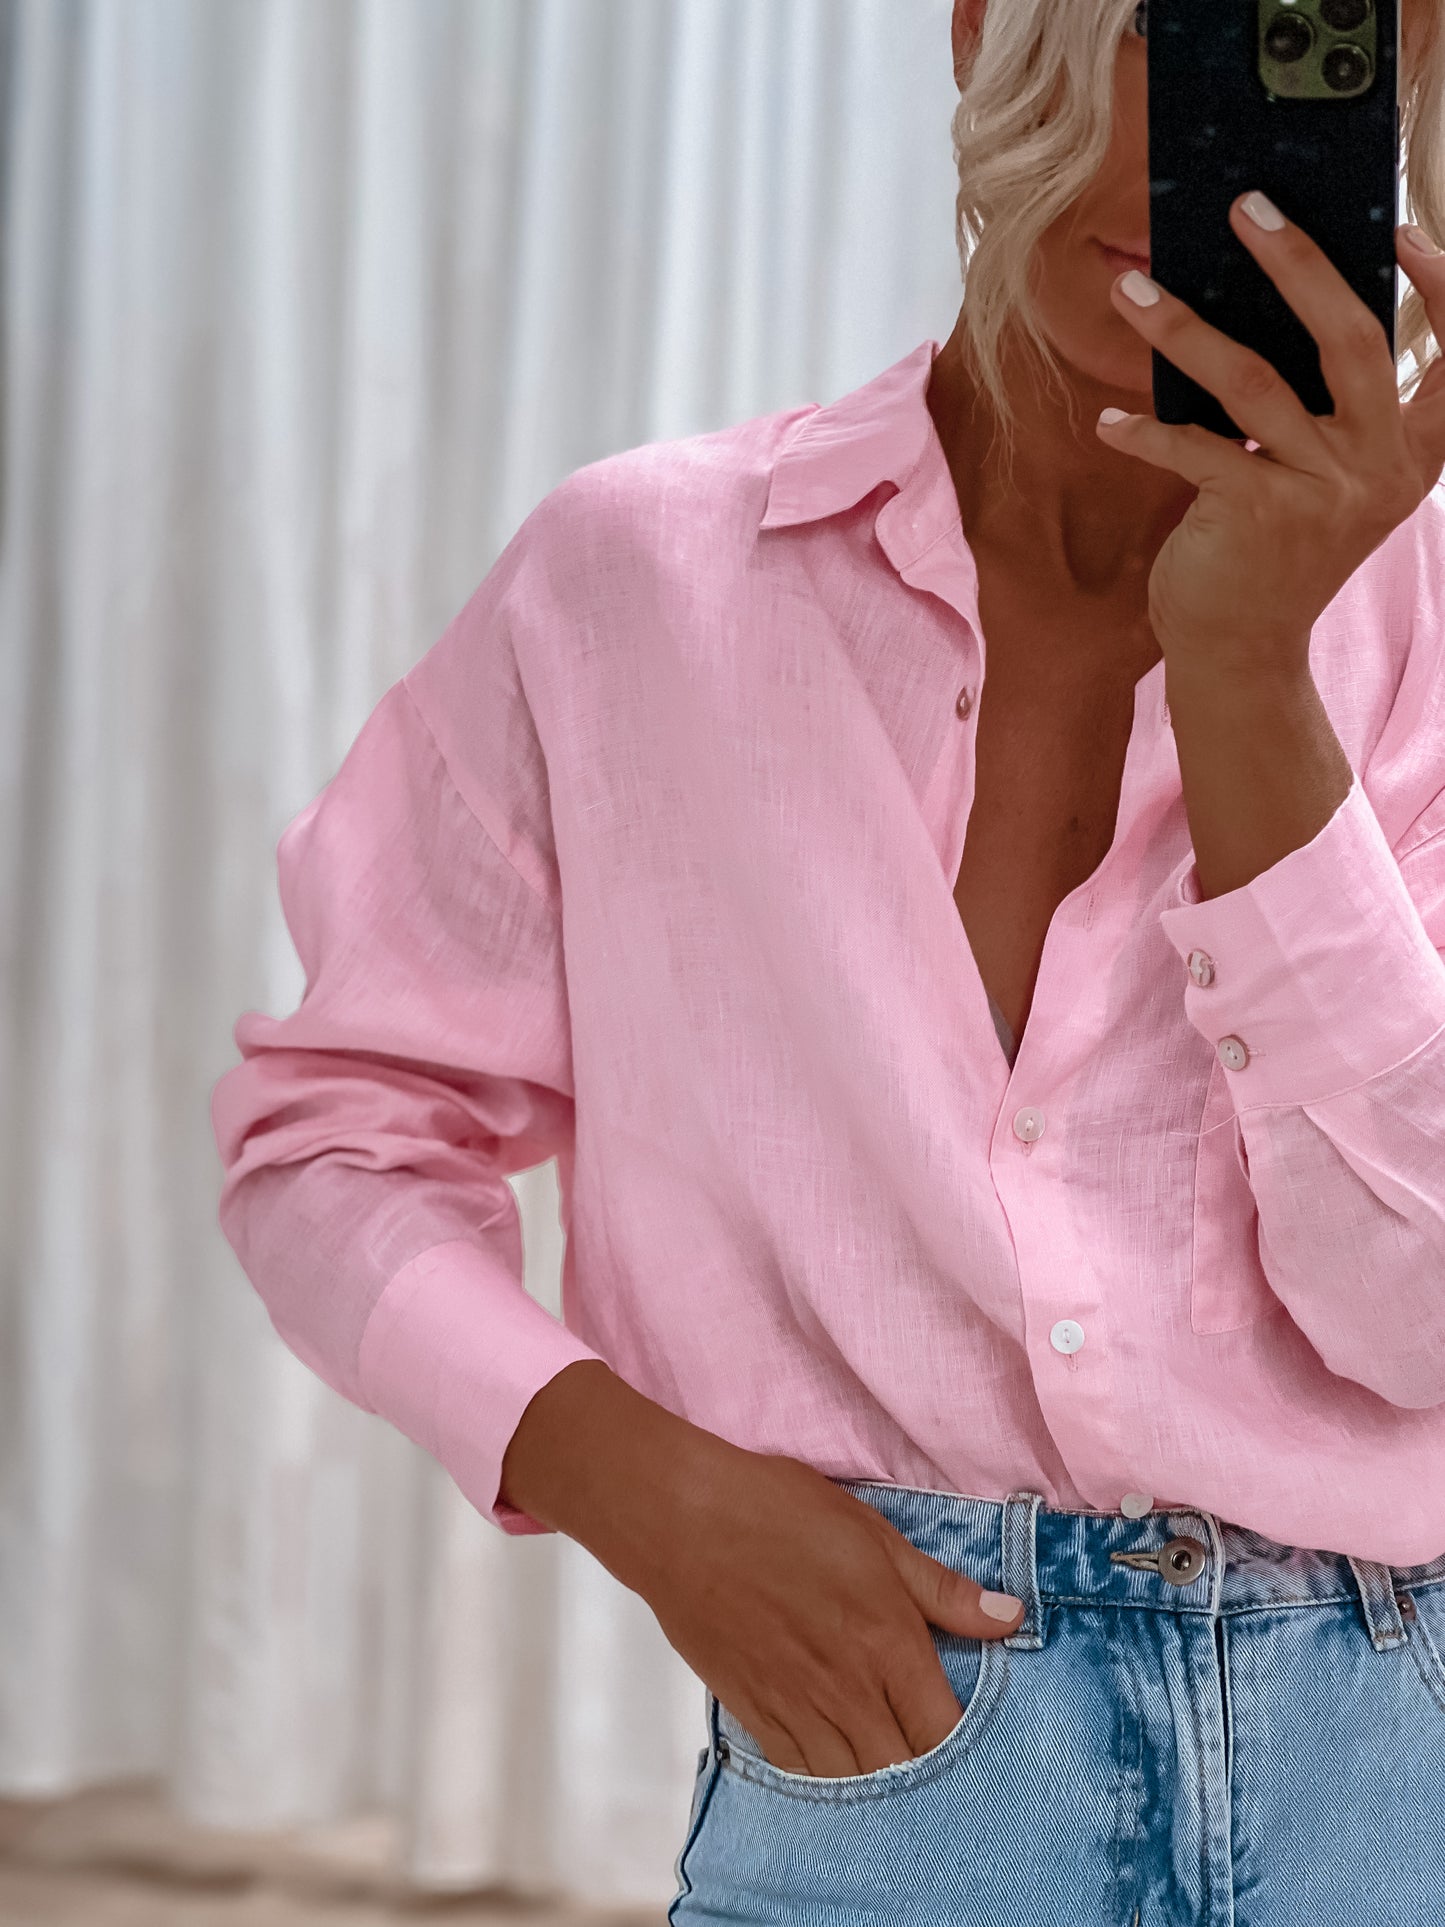 Valentine Shirt - Baby Pink Linen